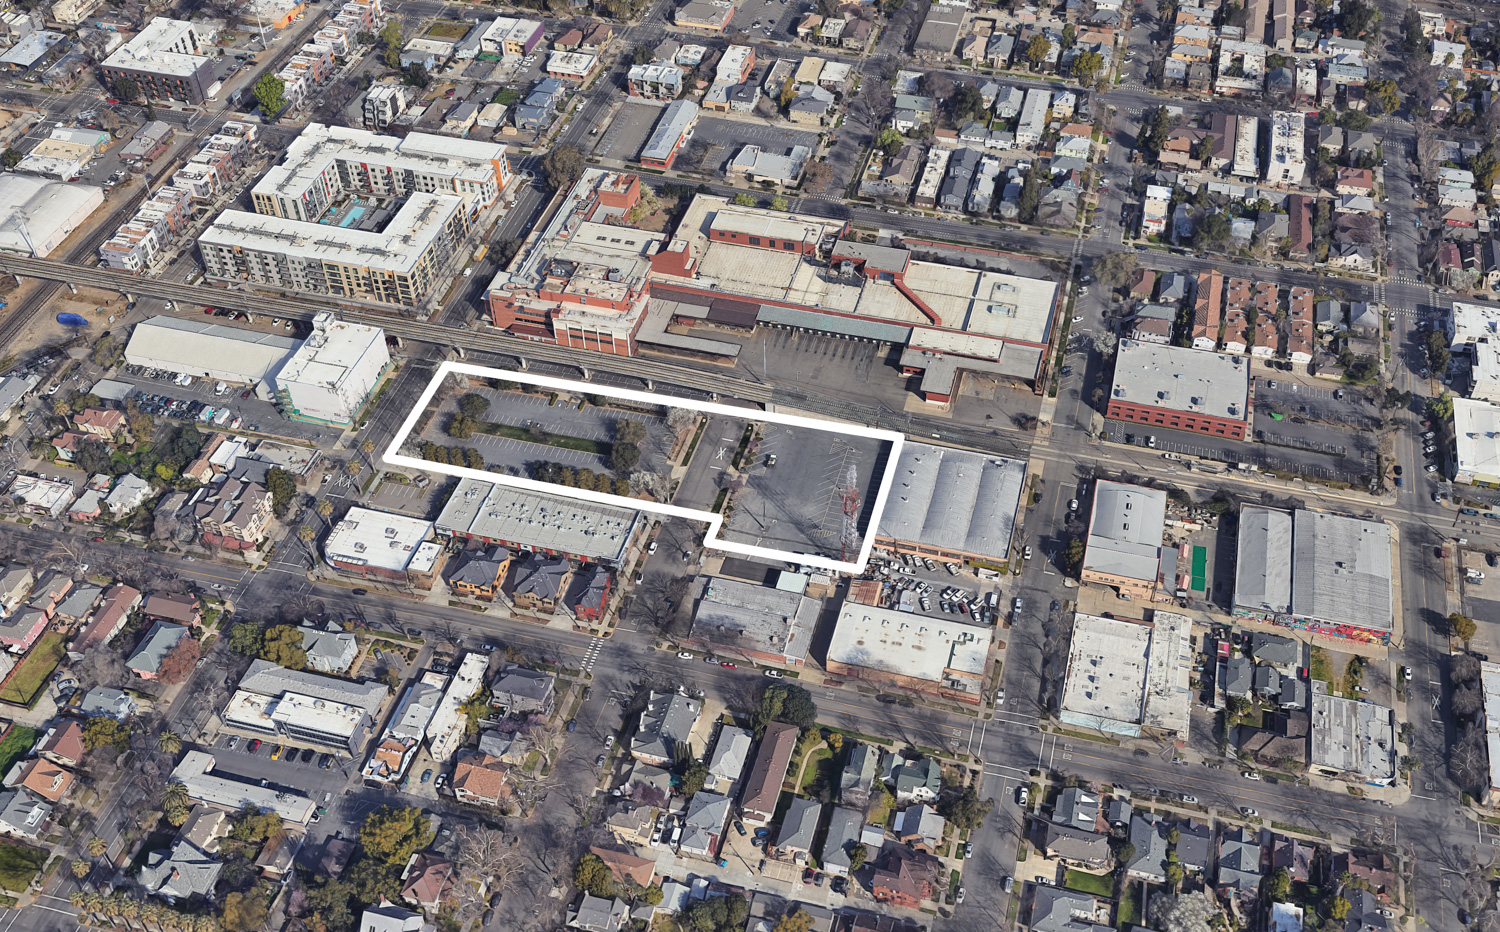 1801 21st Street, image via Google Satellite